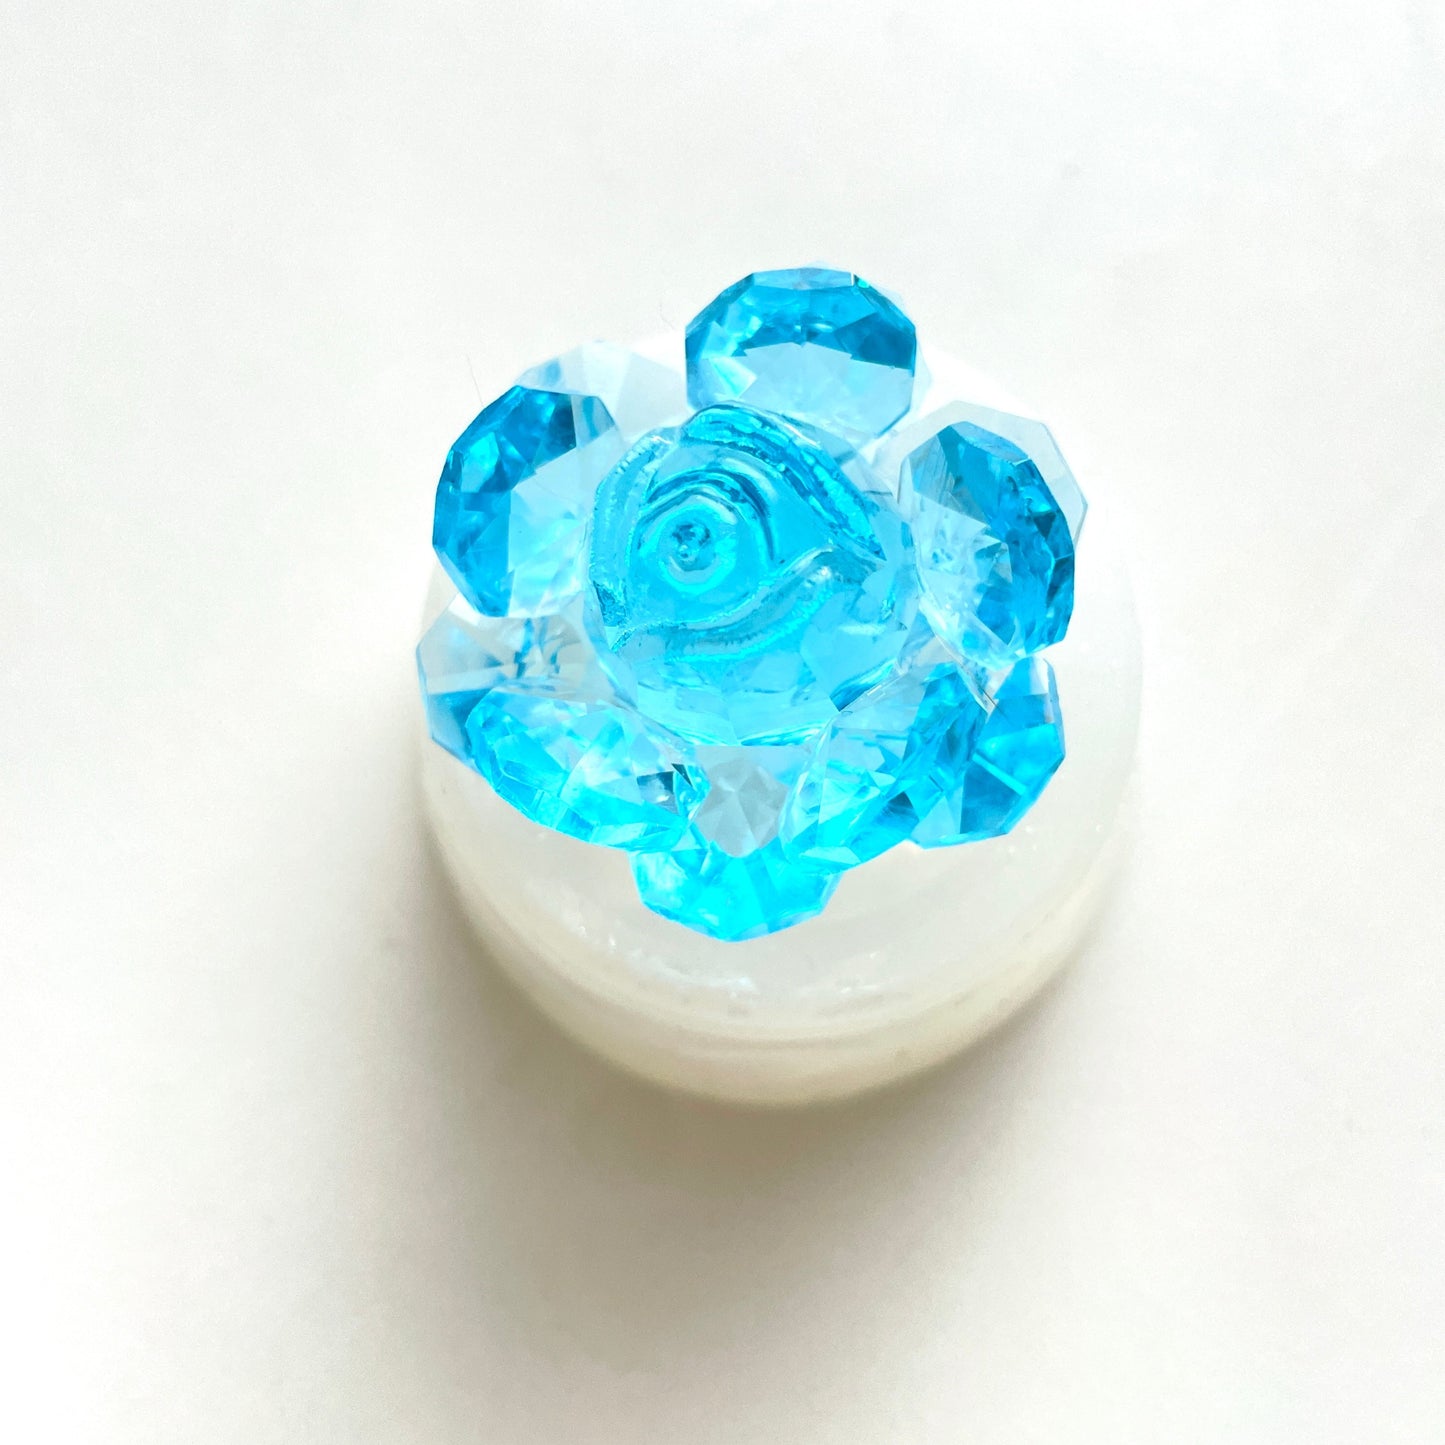 Funkelnde Eleganz: Kristallrosen-Silikonform für atemberaubende Kreationen